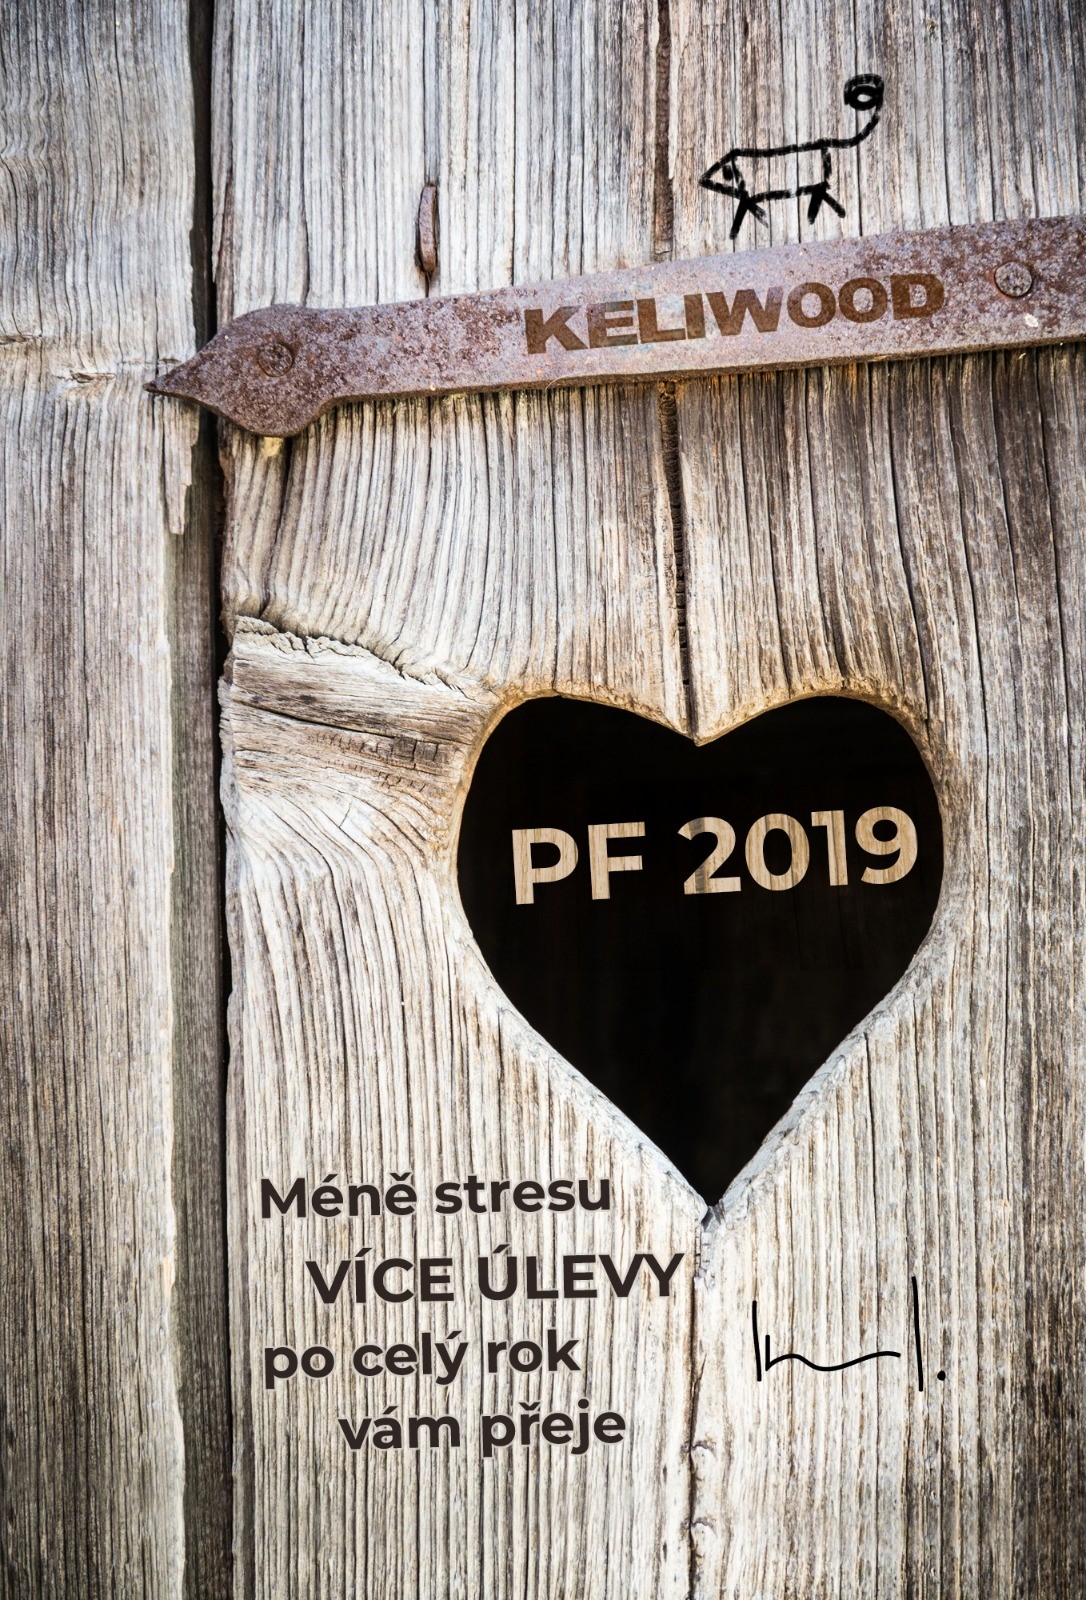 pf 2019, keliwood, zahradní nábytek 2019, sauny 2018, gilování 2019, Méně stresu a VÍCE ÚLEVY